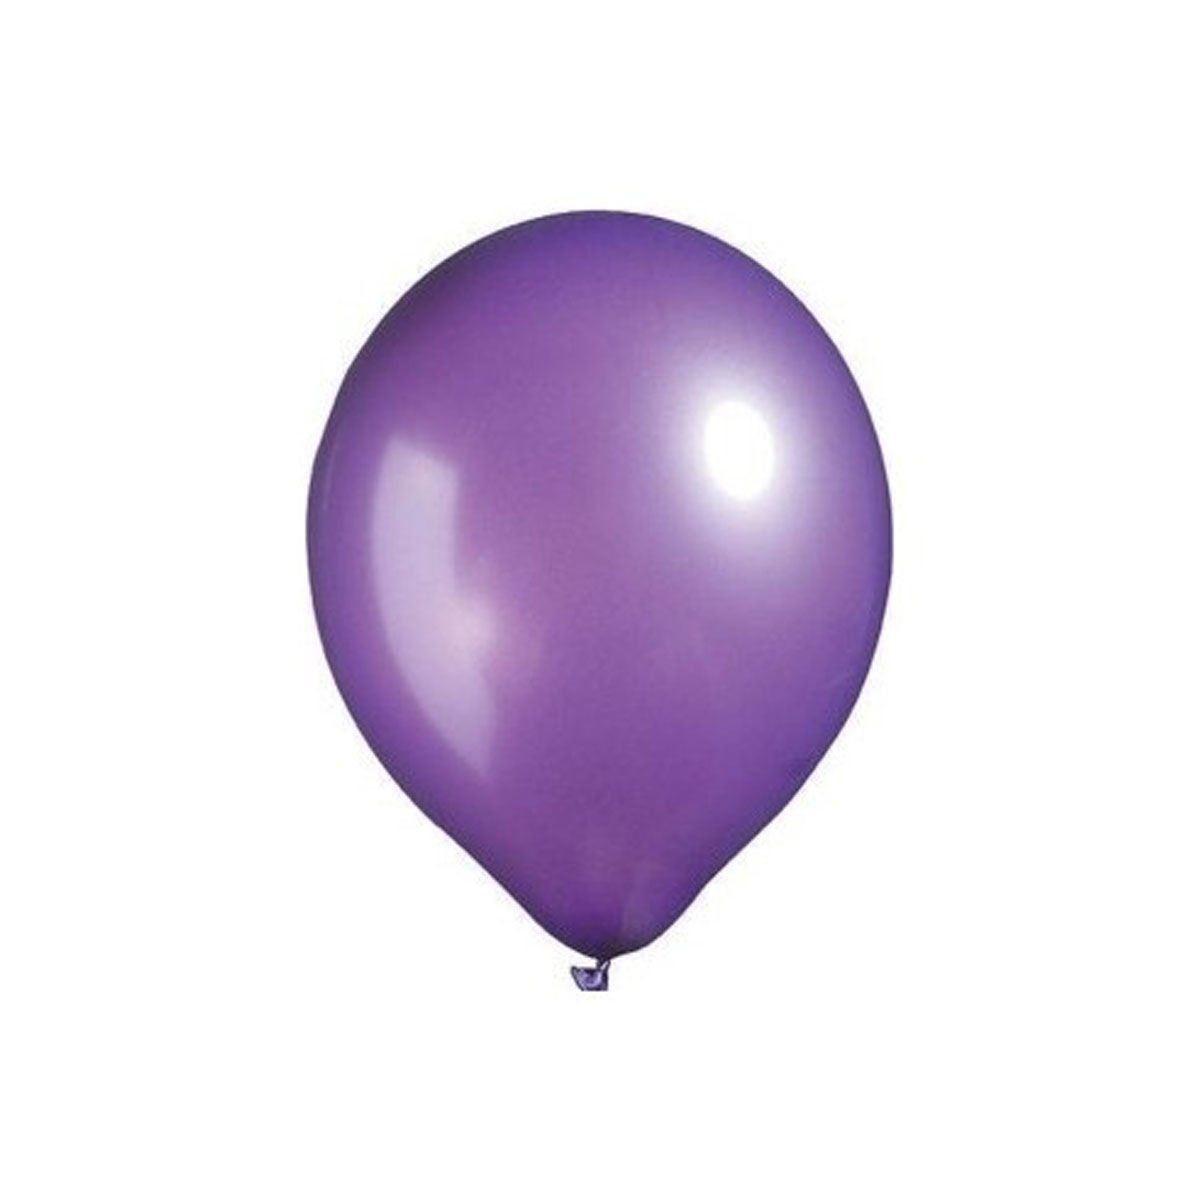 TMT8716 Metalik Violet Balon 12 inç 12'li -Balonevi